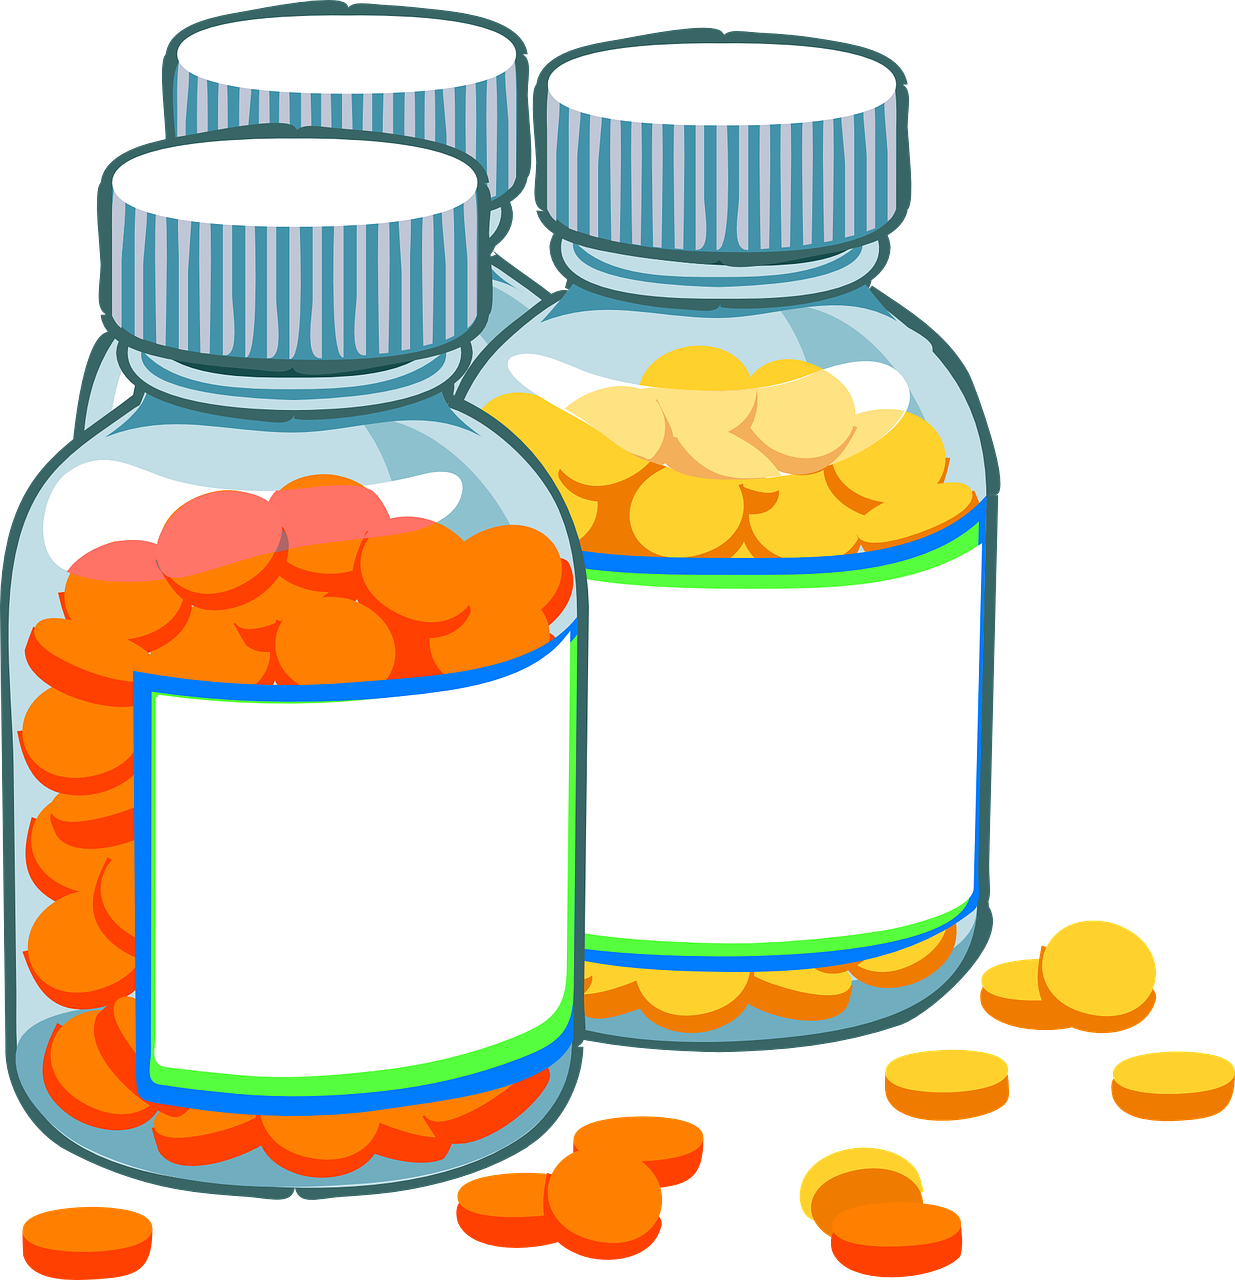 Medication Bottles Cartoon Illustration